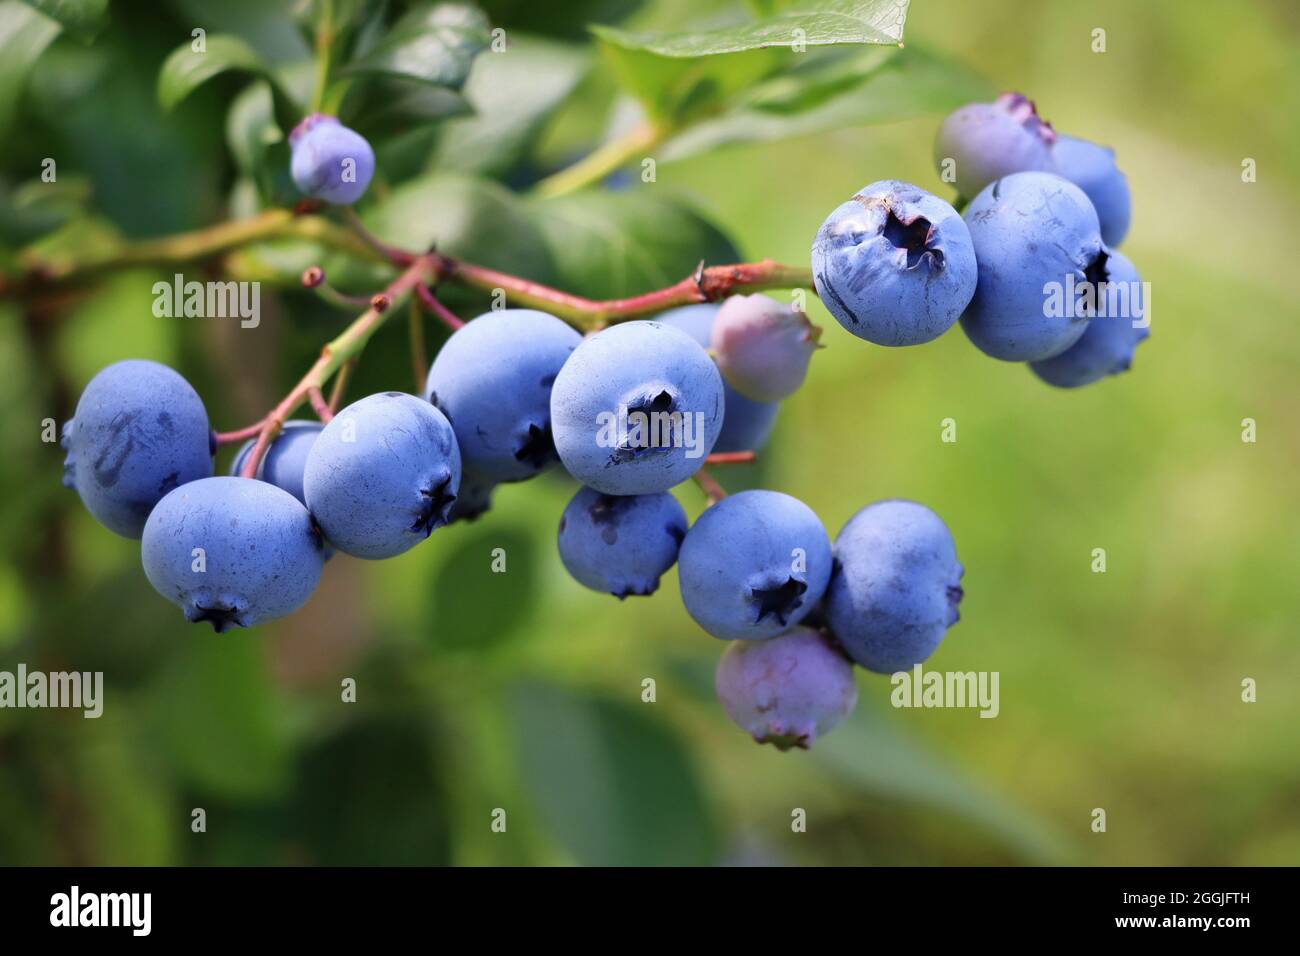 Blaubeeren Reifen auf der Bush. Strauch von Heidelbeeren. Beeren im Garten.  In der Nähe von Bush, Blaubeere Vaccinium corymbosum Stockfotografie - Alamy